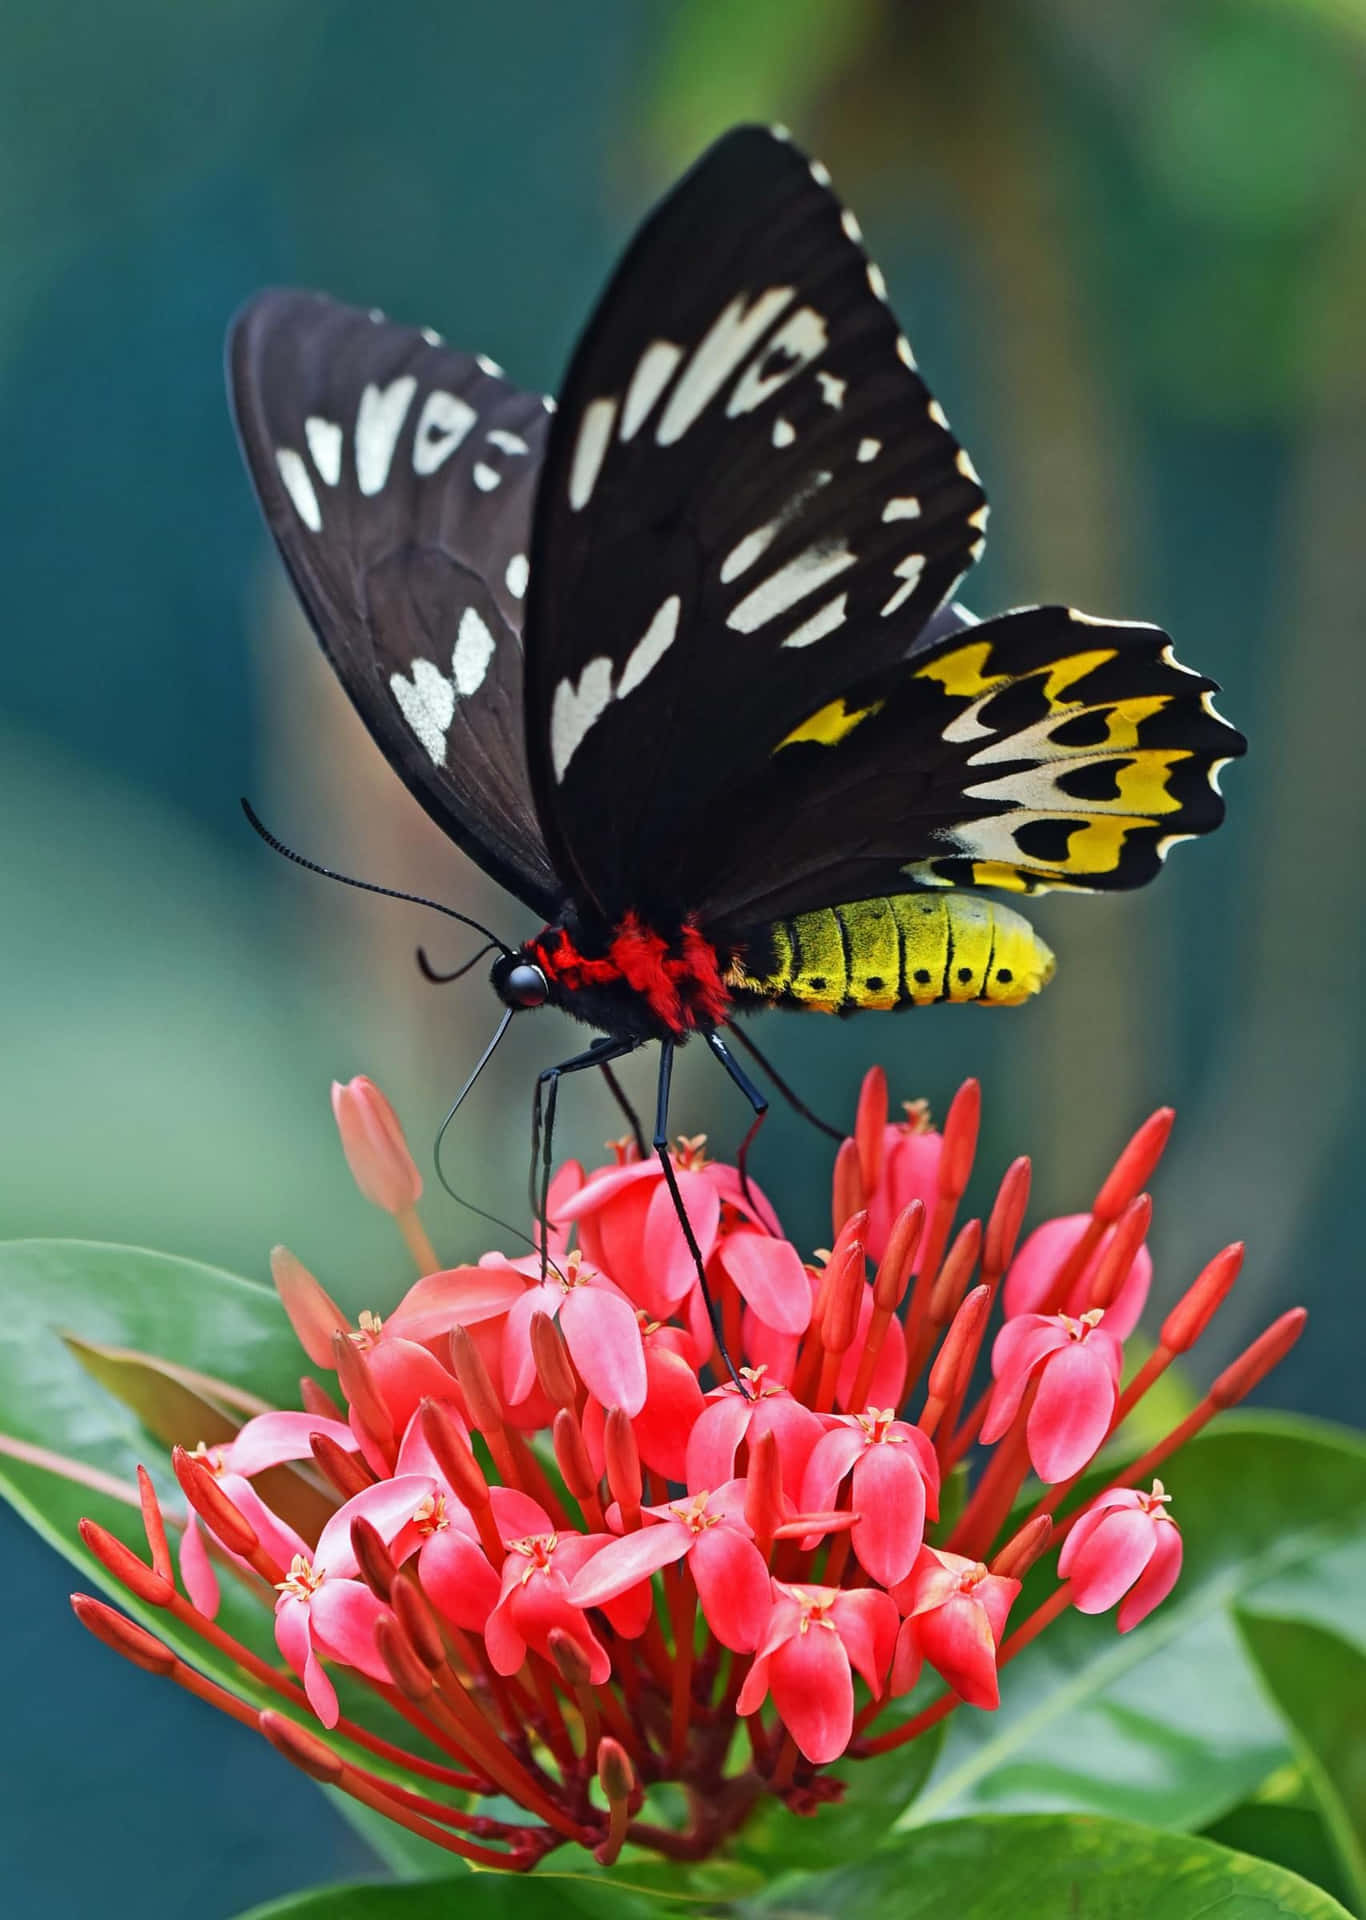 A Butterfly Enjoying a Delicate Flower